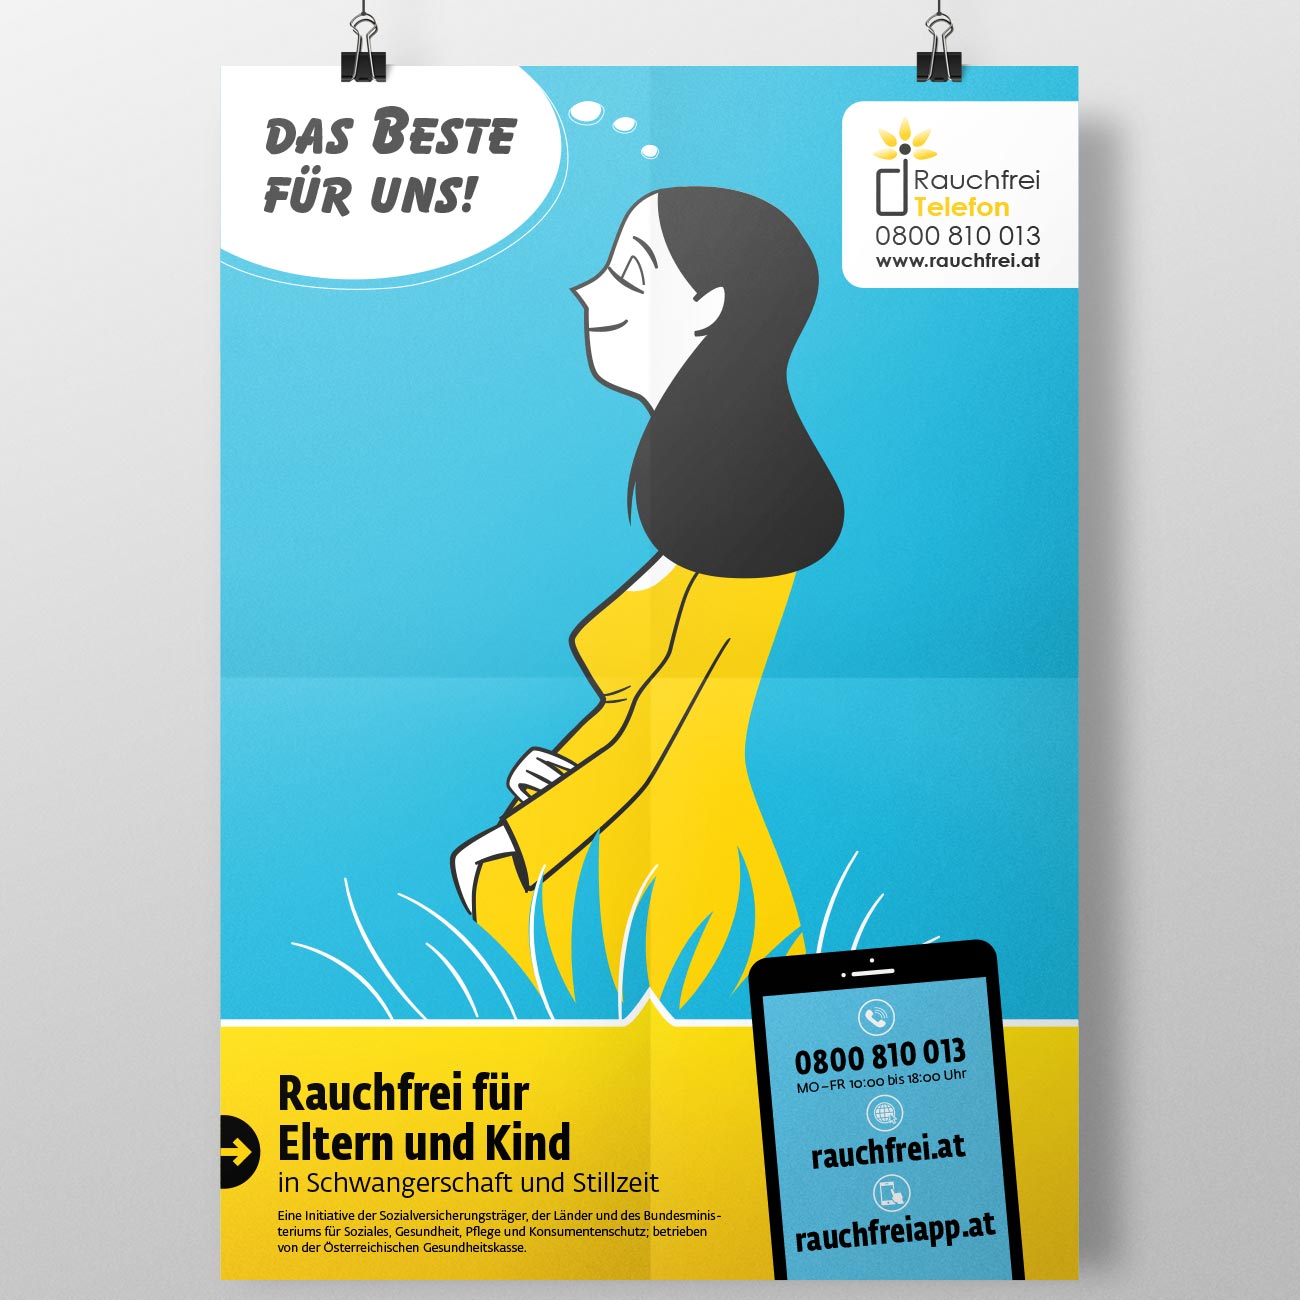 Corporate Design und Illustration für das Rauchfreitelefon der Österreichischen Gesundheitskasse von studio mishugge – Rauchfrei für Elter und Kind